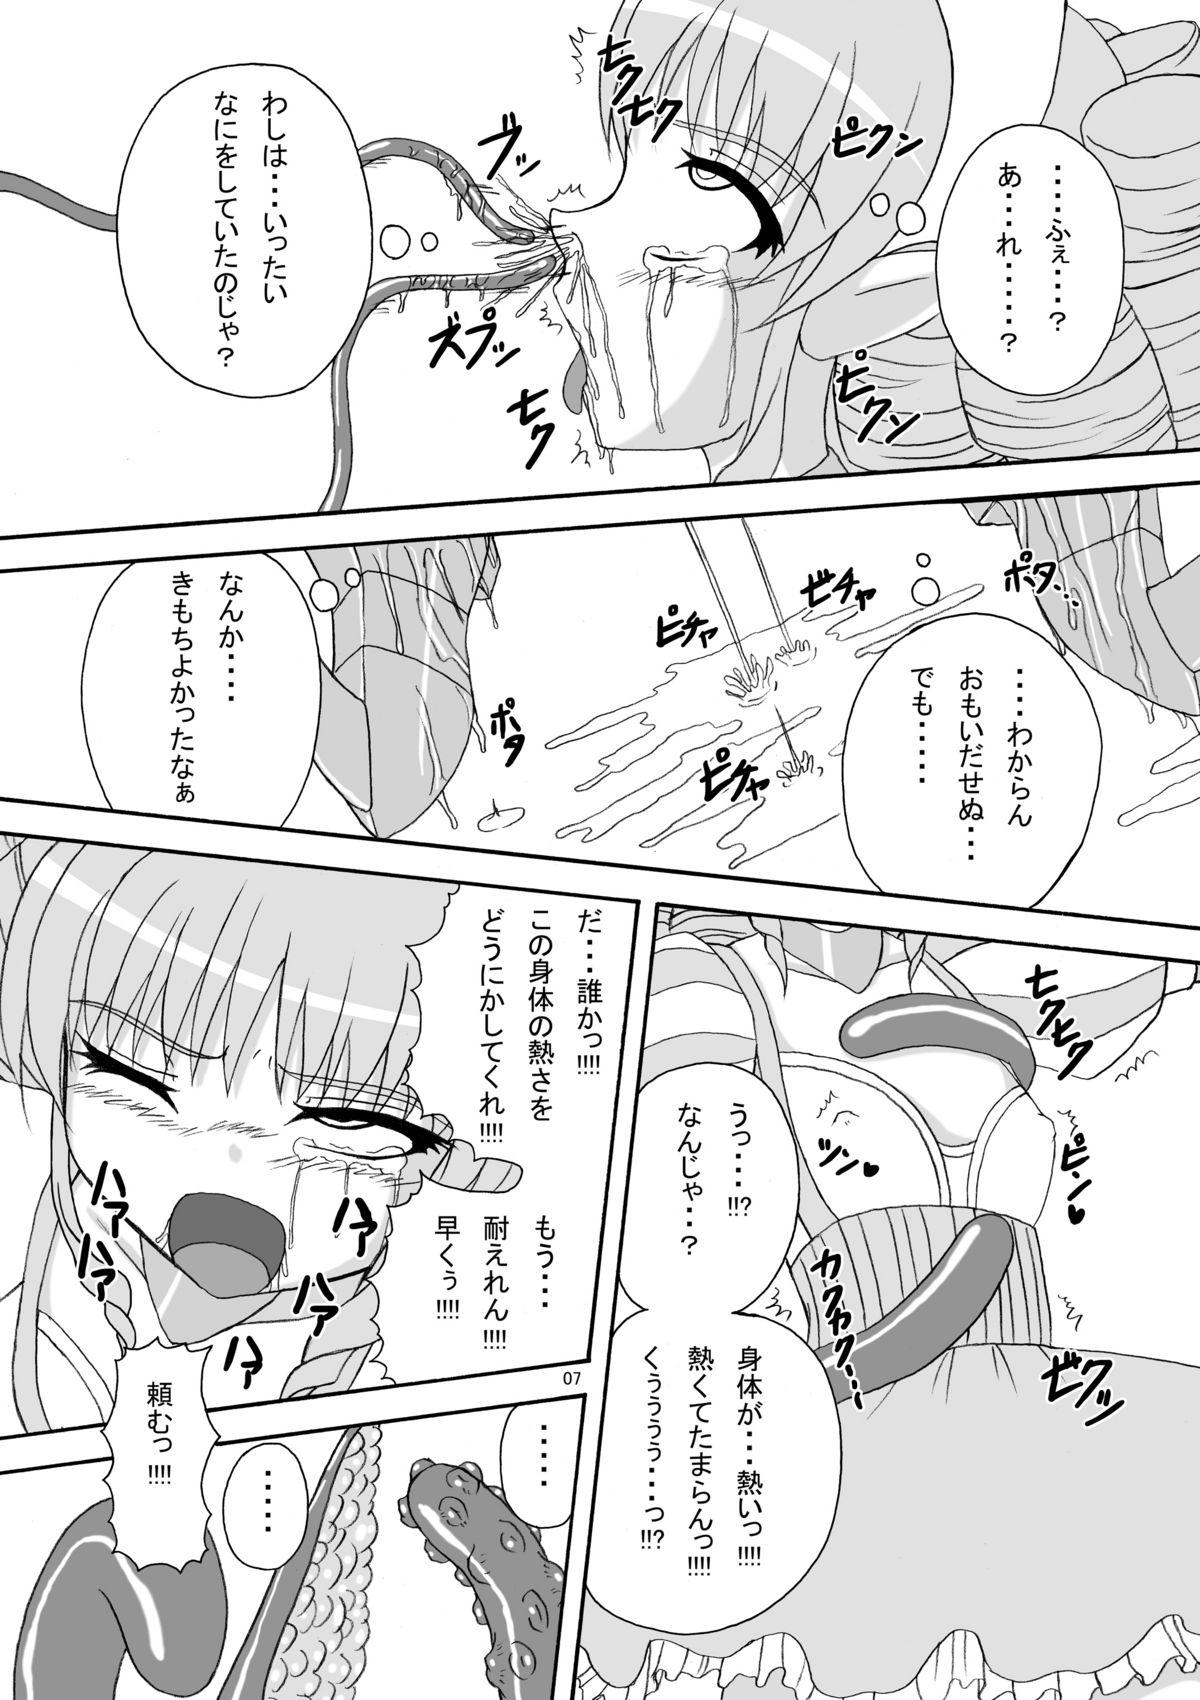 [Pint Size (Tenrai)] Hard Core Blade Ma Sawa Zenshin Kan (Queen's Blade) page 6 full